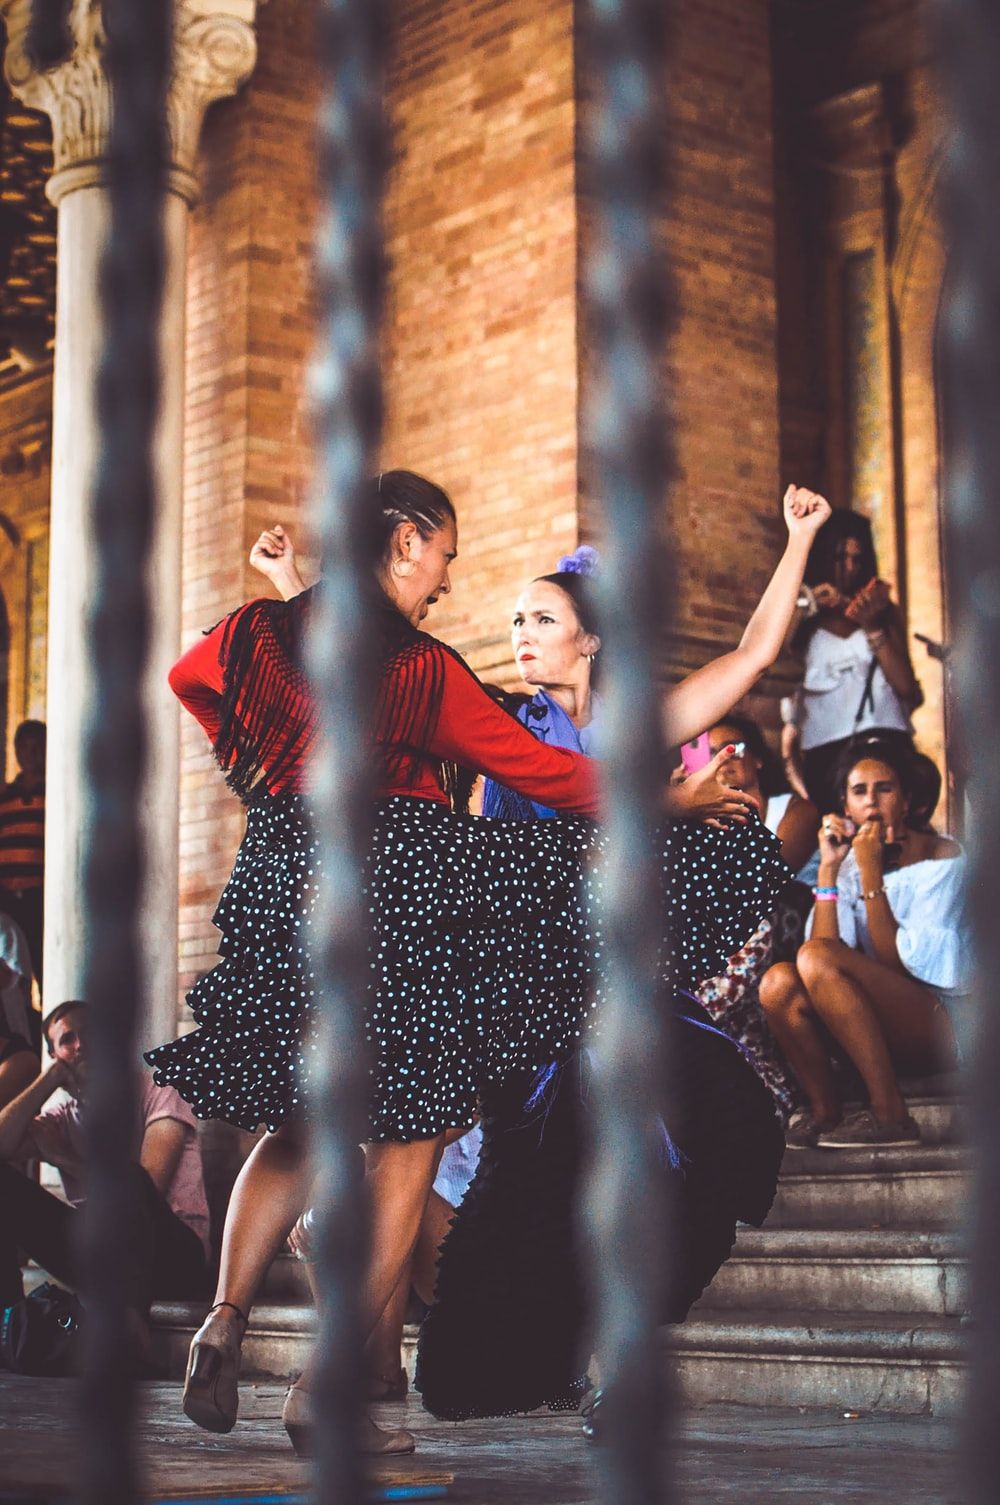 Más de 500 imágenes de flamenco [HD] | Descargar imágenes gratis